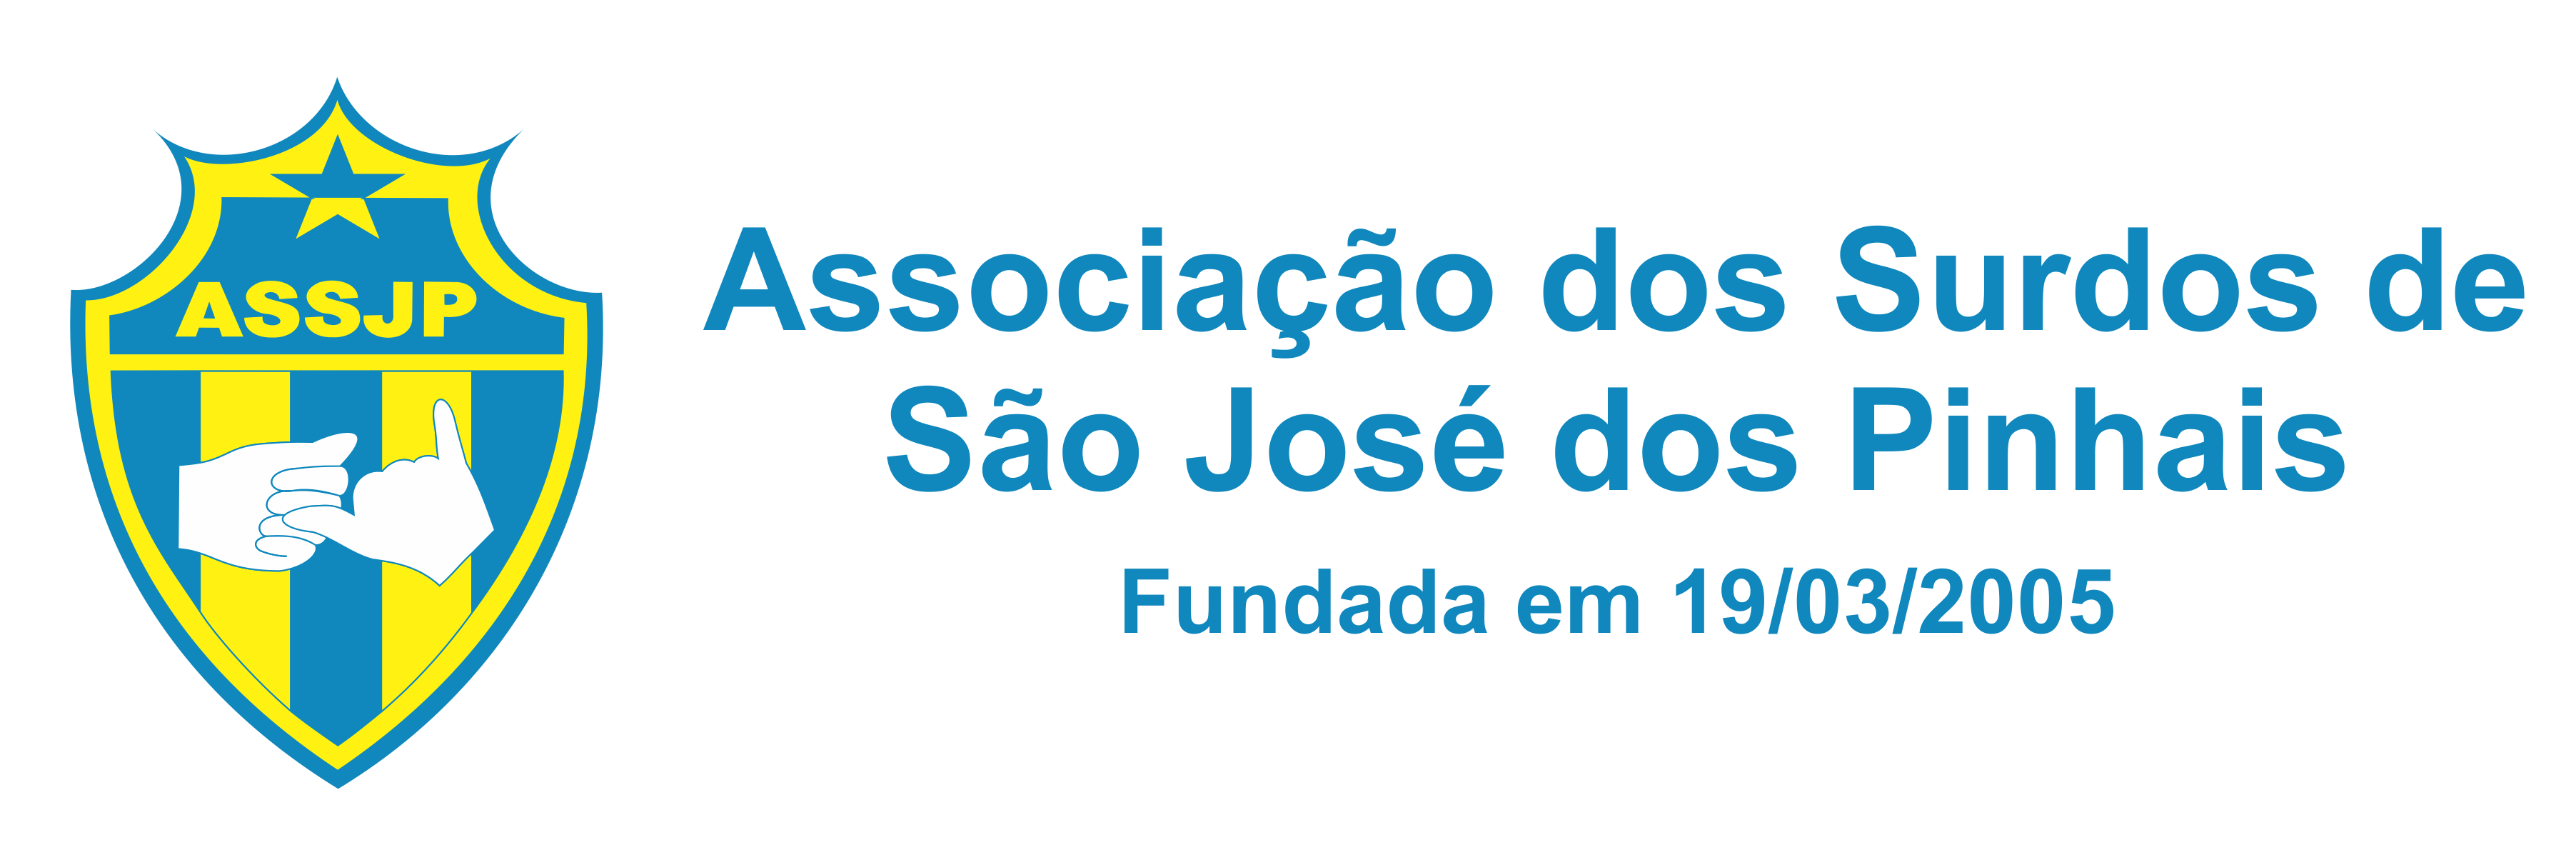 ASSJP - Associação dos Surdos de São José dos Pinhais